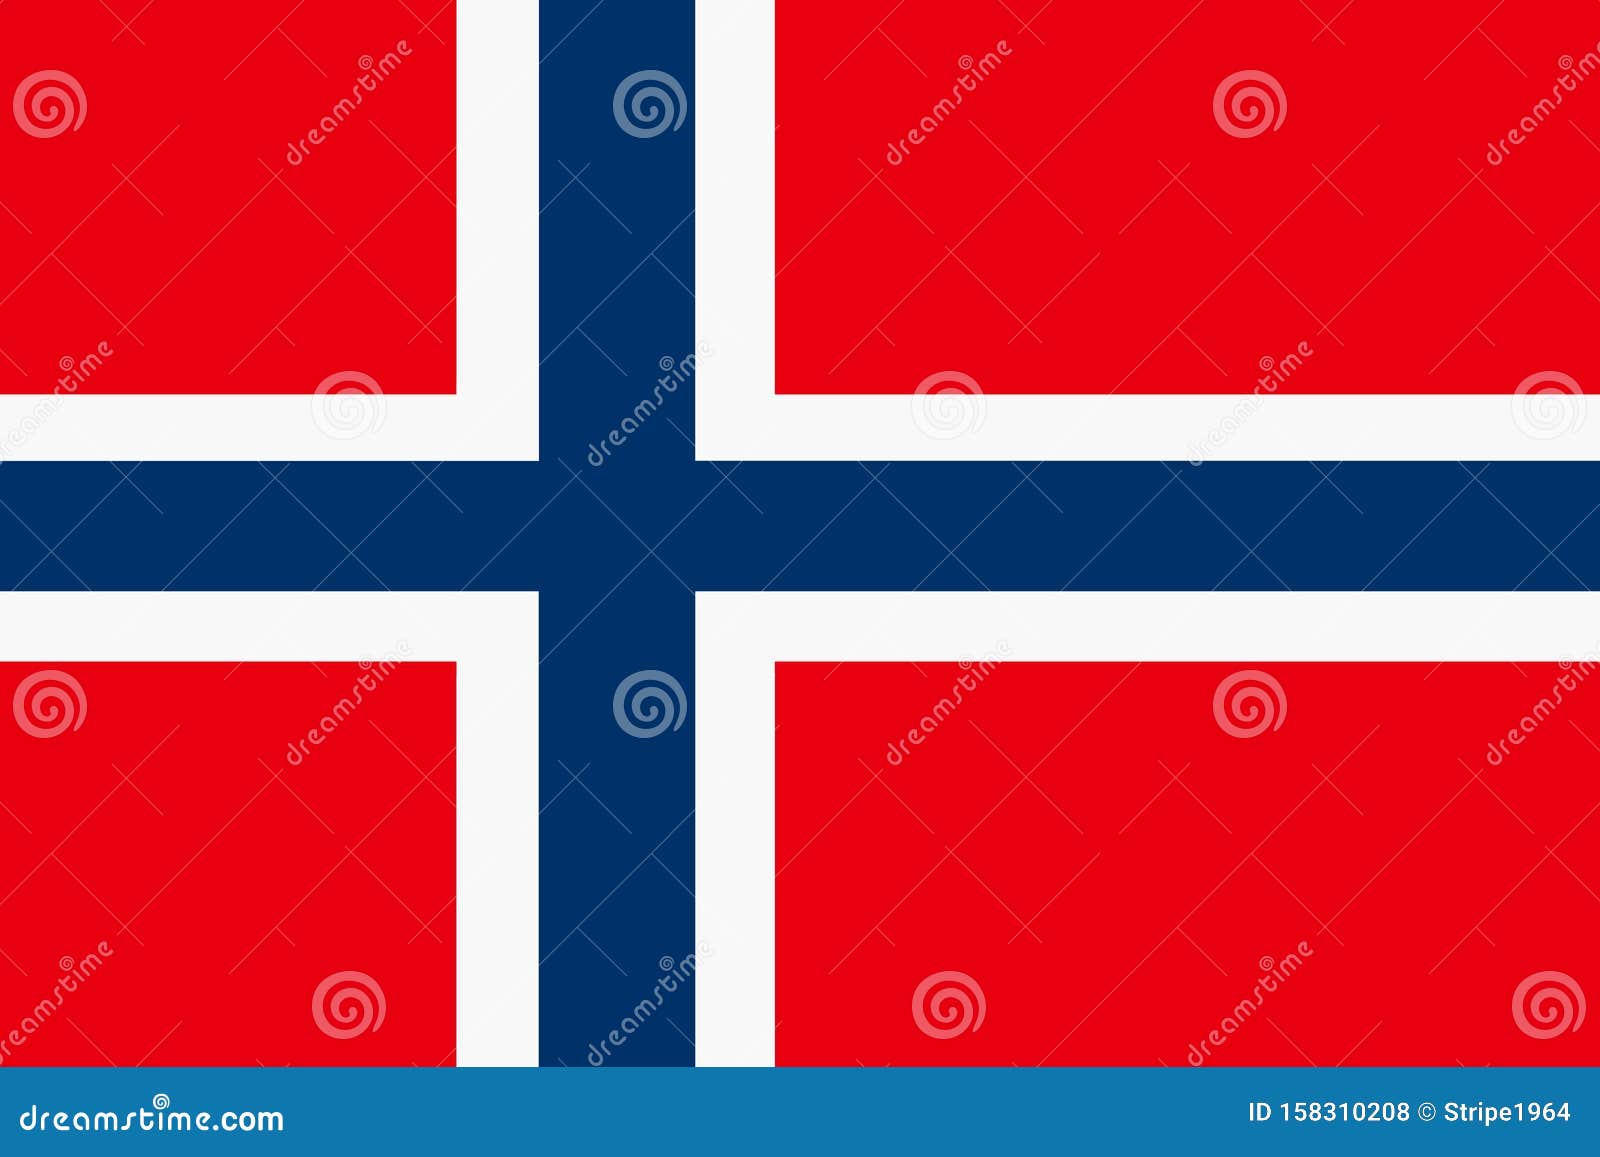 Norwegian flag là quốc kỳ của Na Uy, với màu xanh lá cây, đỏ và trắng. Hãy xem hình ảnh này và đắm mình trong vẻ đẹp của quốc gia này, từ những ngọn núi cao tuyết trắng cho đến những vịnh xanh biếc. Norwegian flag thực sự là một biểu tượng của cảm giác tự do và sự nhiệt tình.